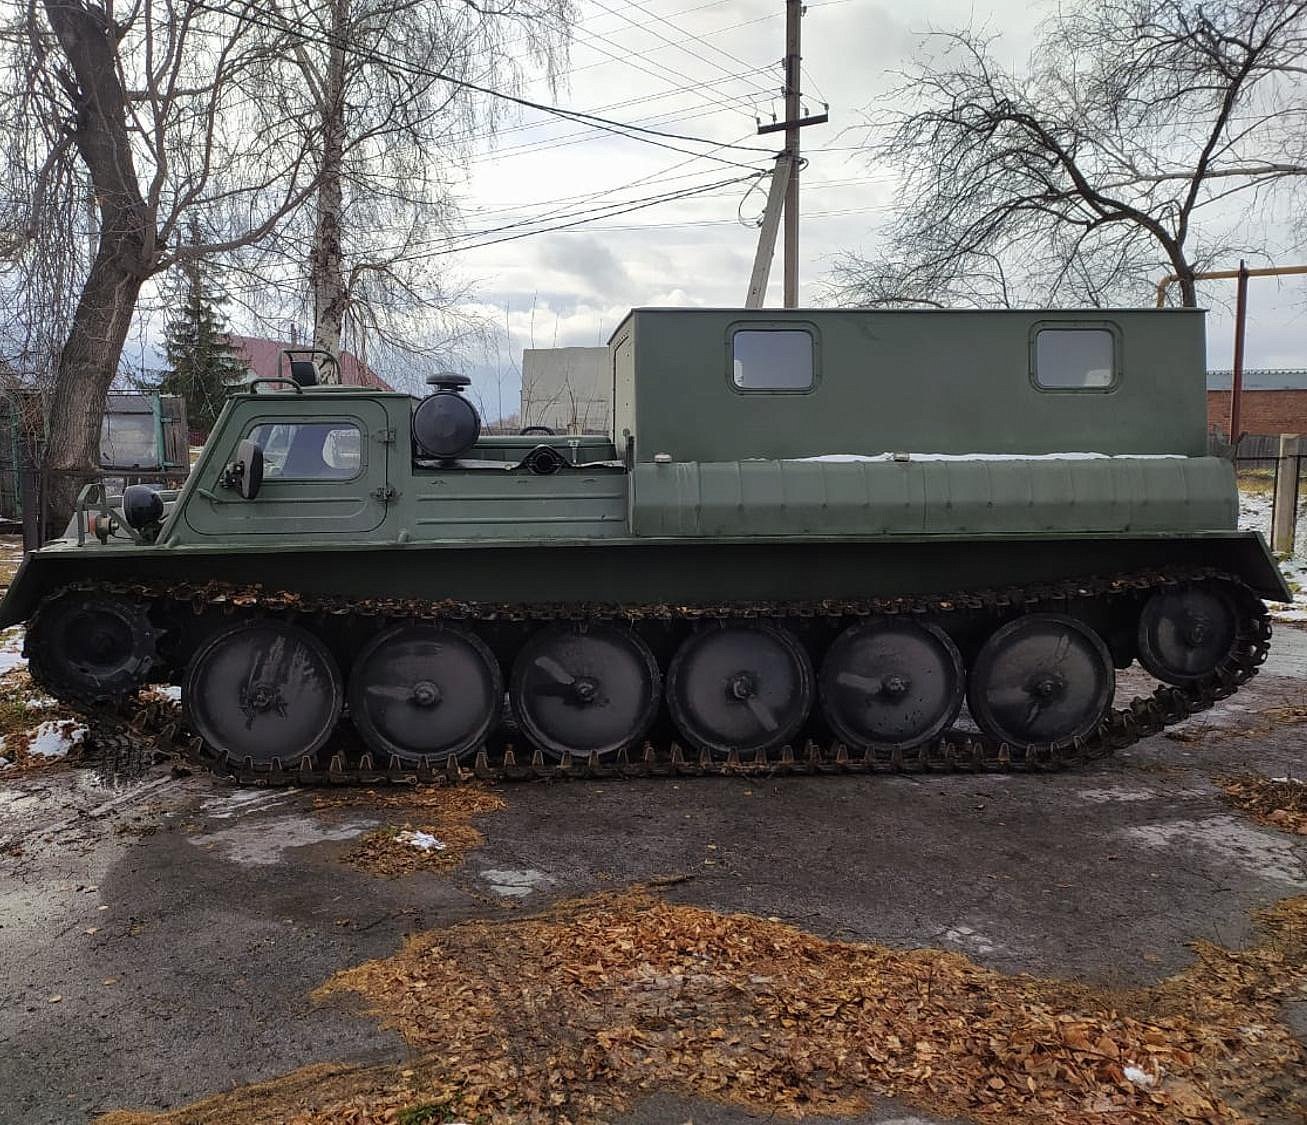 Похожую на танки лесопожарную технику закупили в Новосибирской области